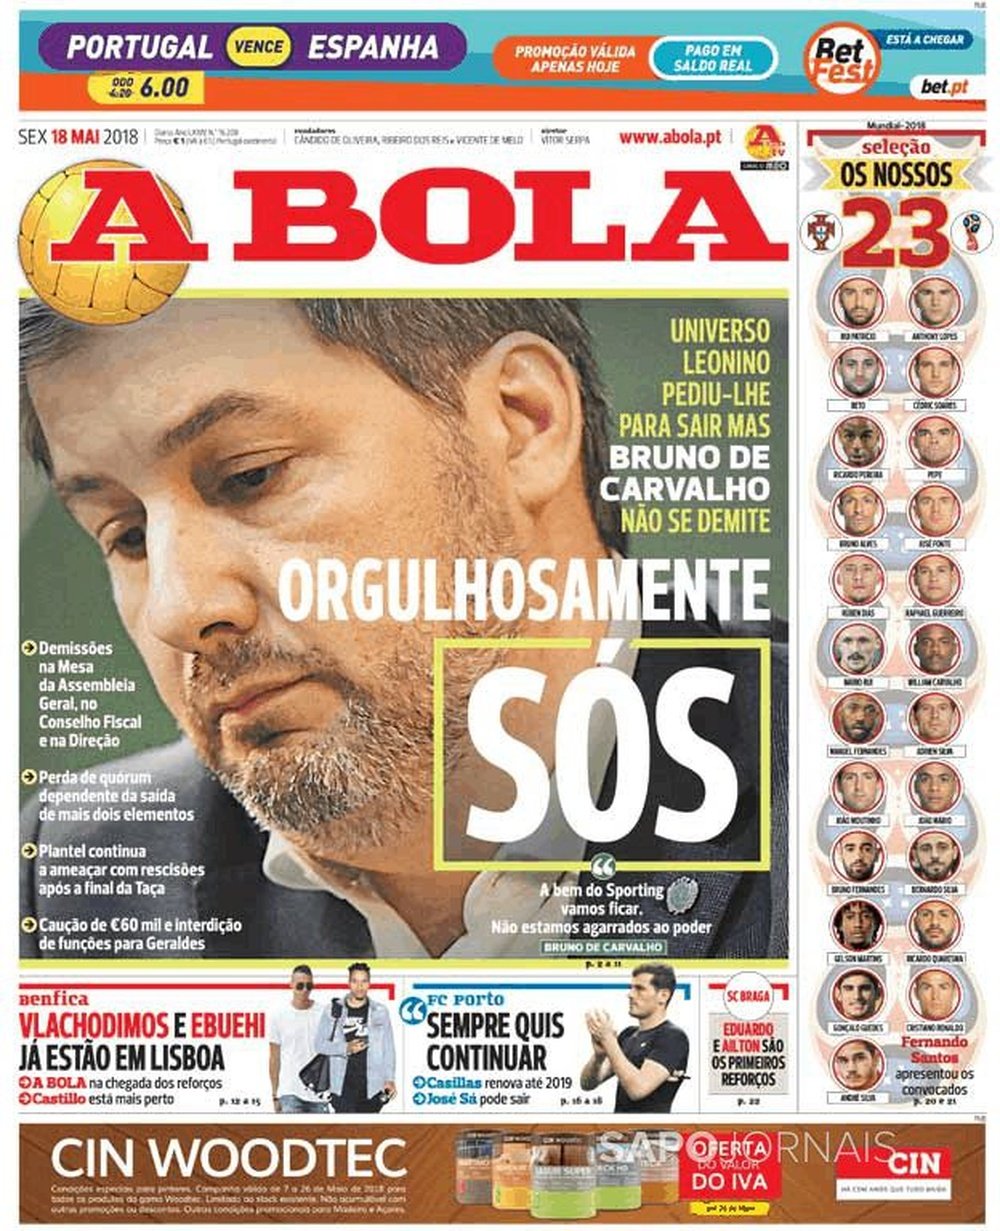 Capa de 'A Bola' 18-05-2018.Abola